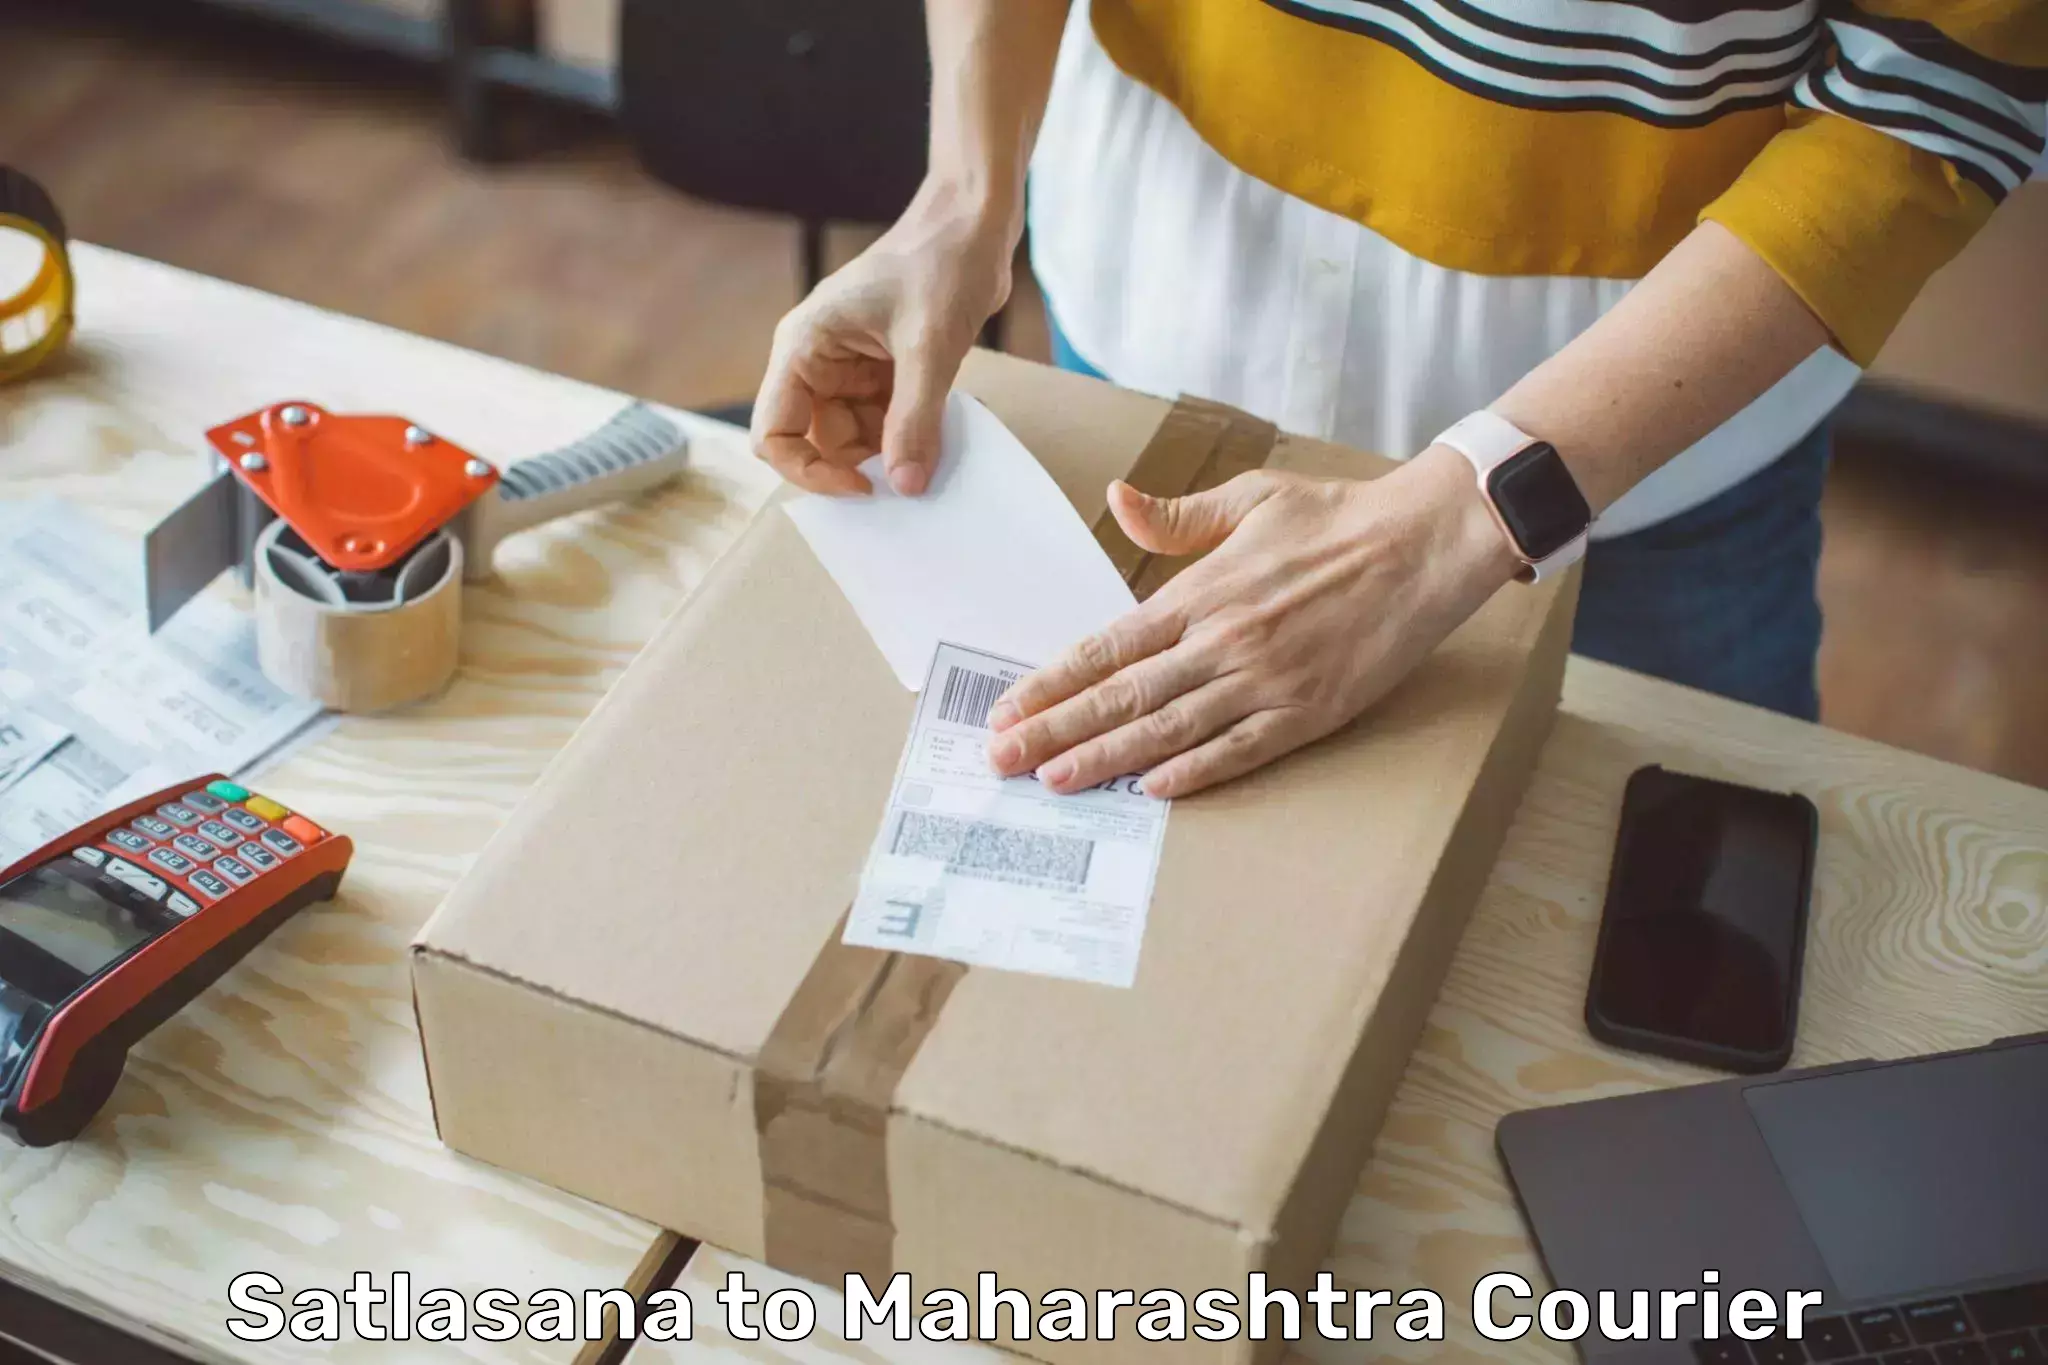 Express courier facilities Satlasana to Maharashtra